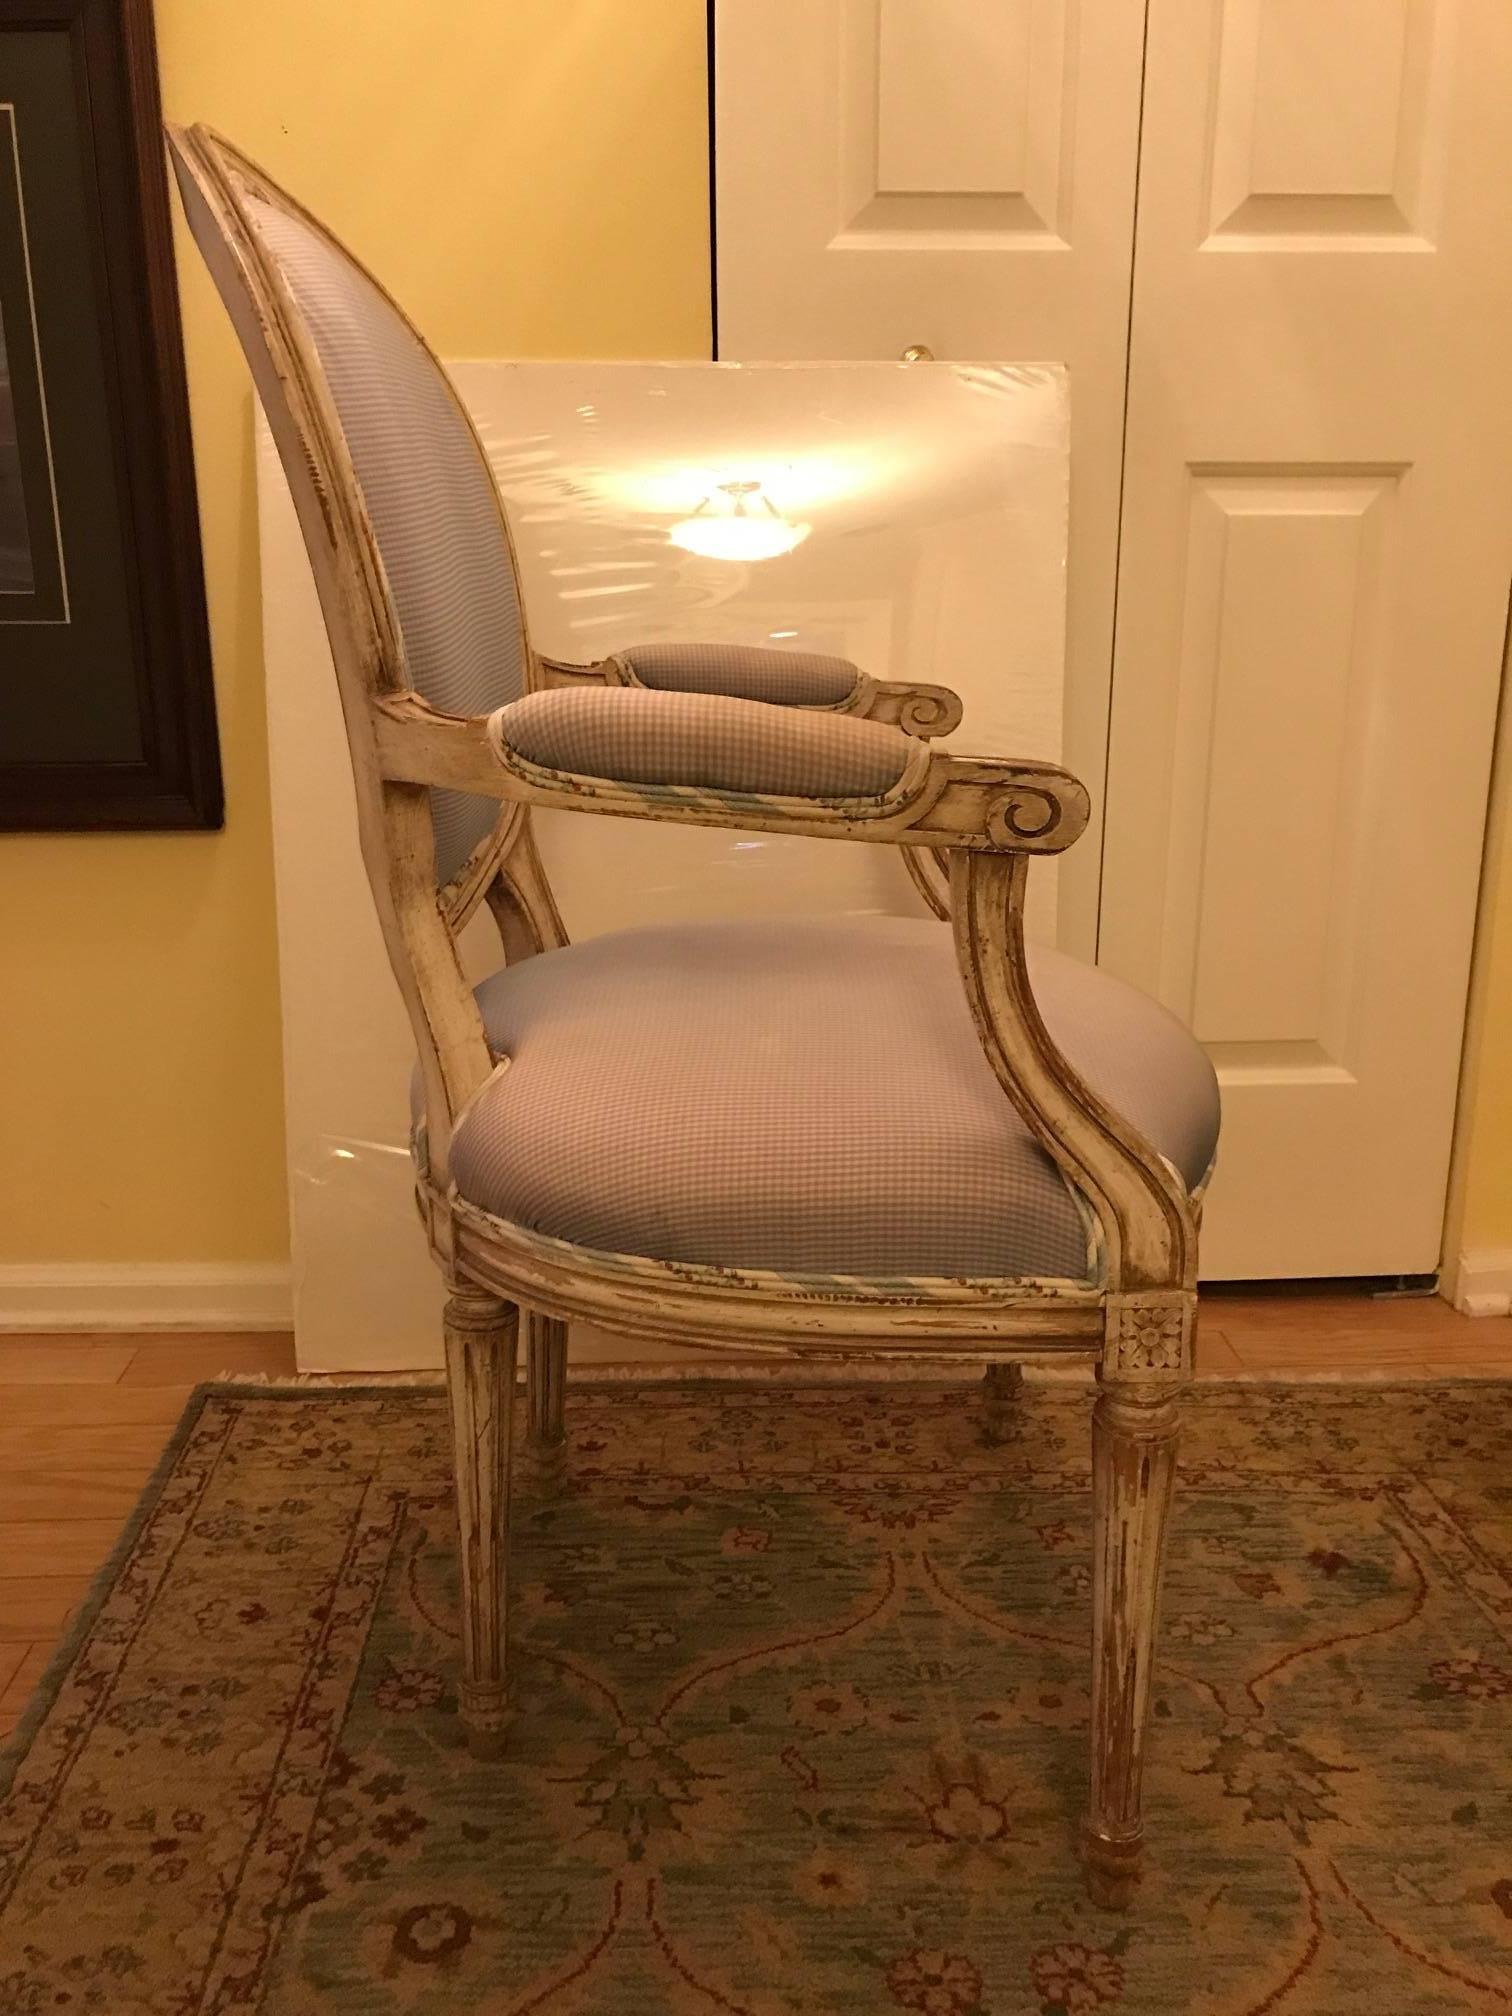 Paire de chaises de style Louis XVI en noyer peint et sculpté de la Maison Jansen. 
Les cadres classiques avec des dossiers ovales, des bras rembourrés et des sièges à ressorts hélicoïdaux noués à la main sont peints en beige crème d'origine avec